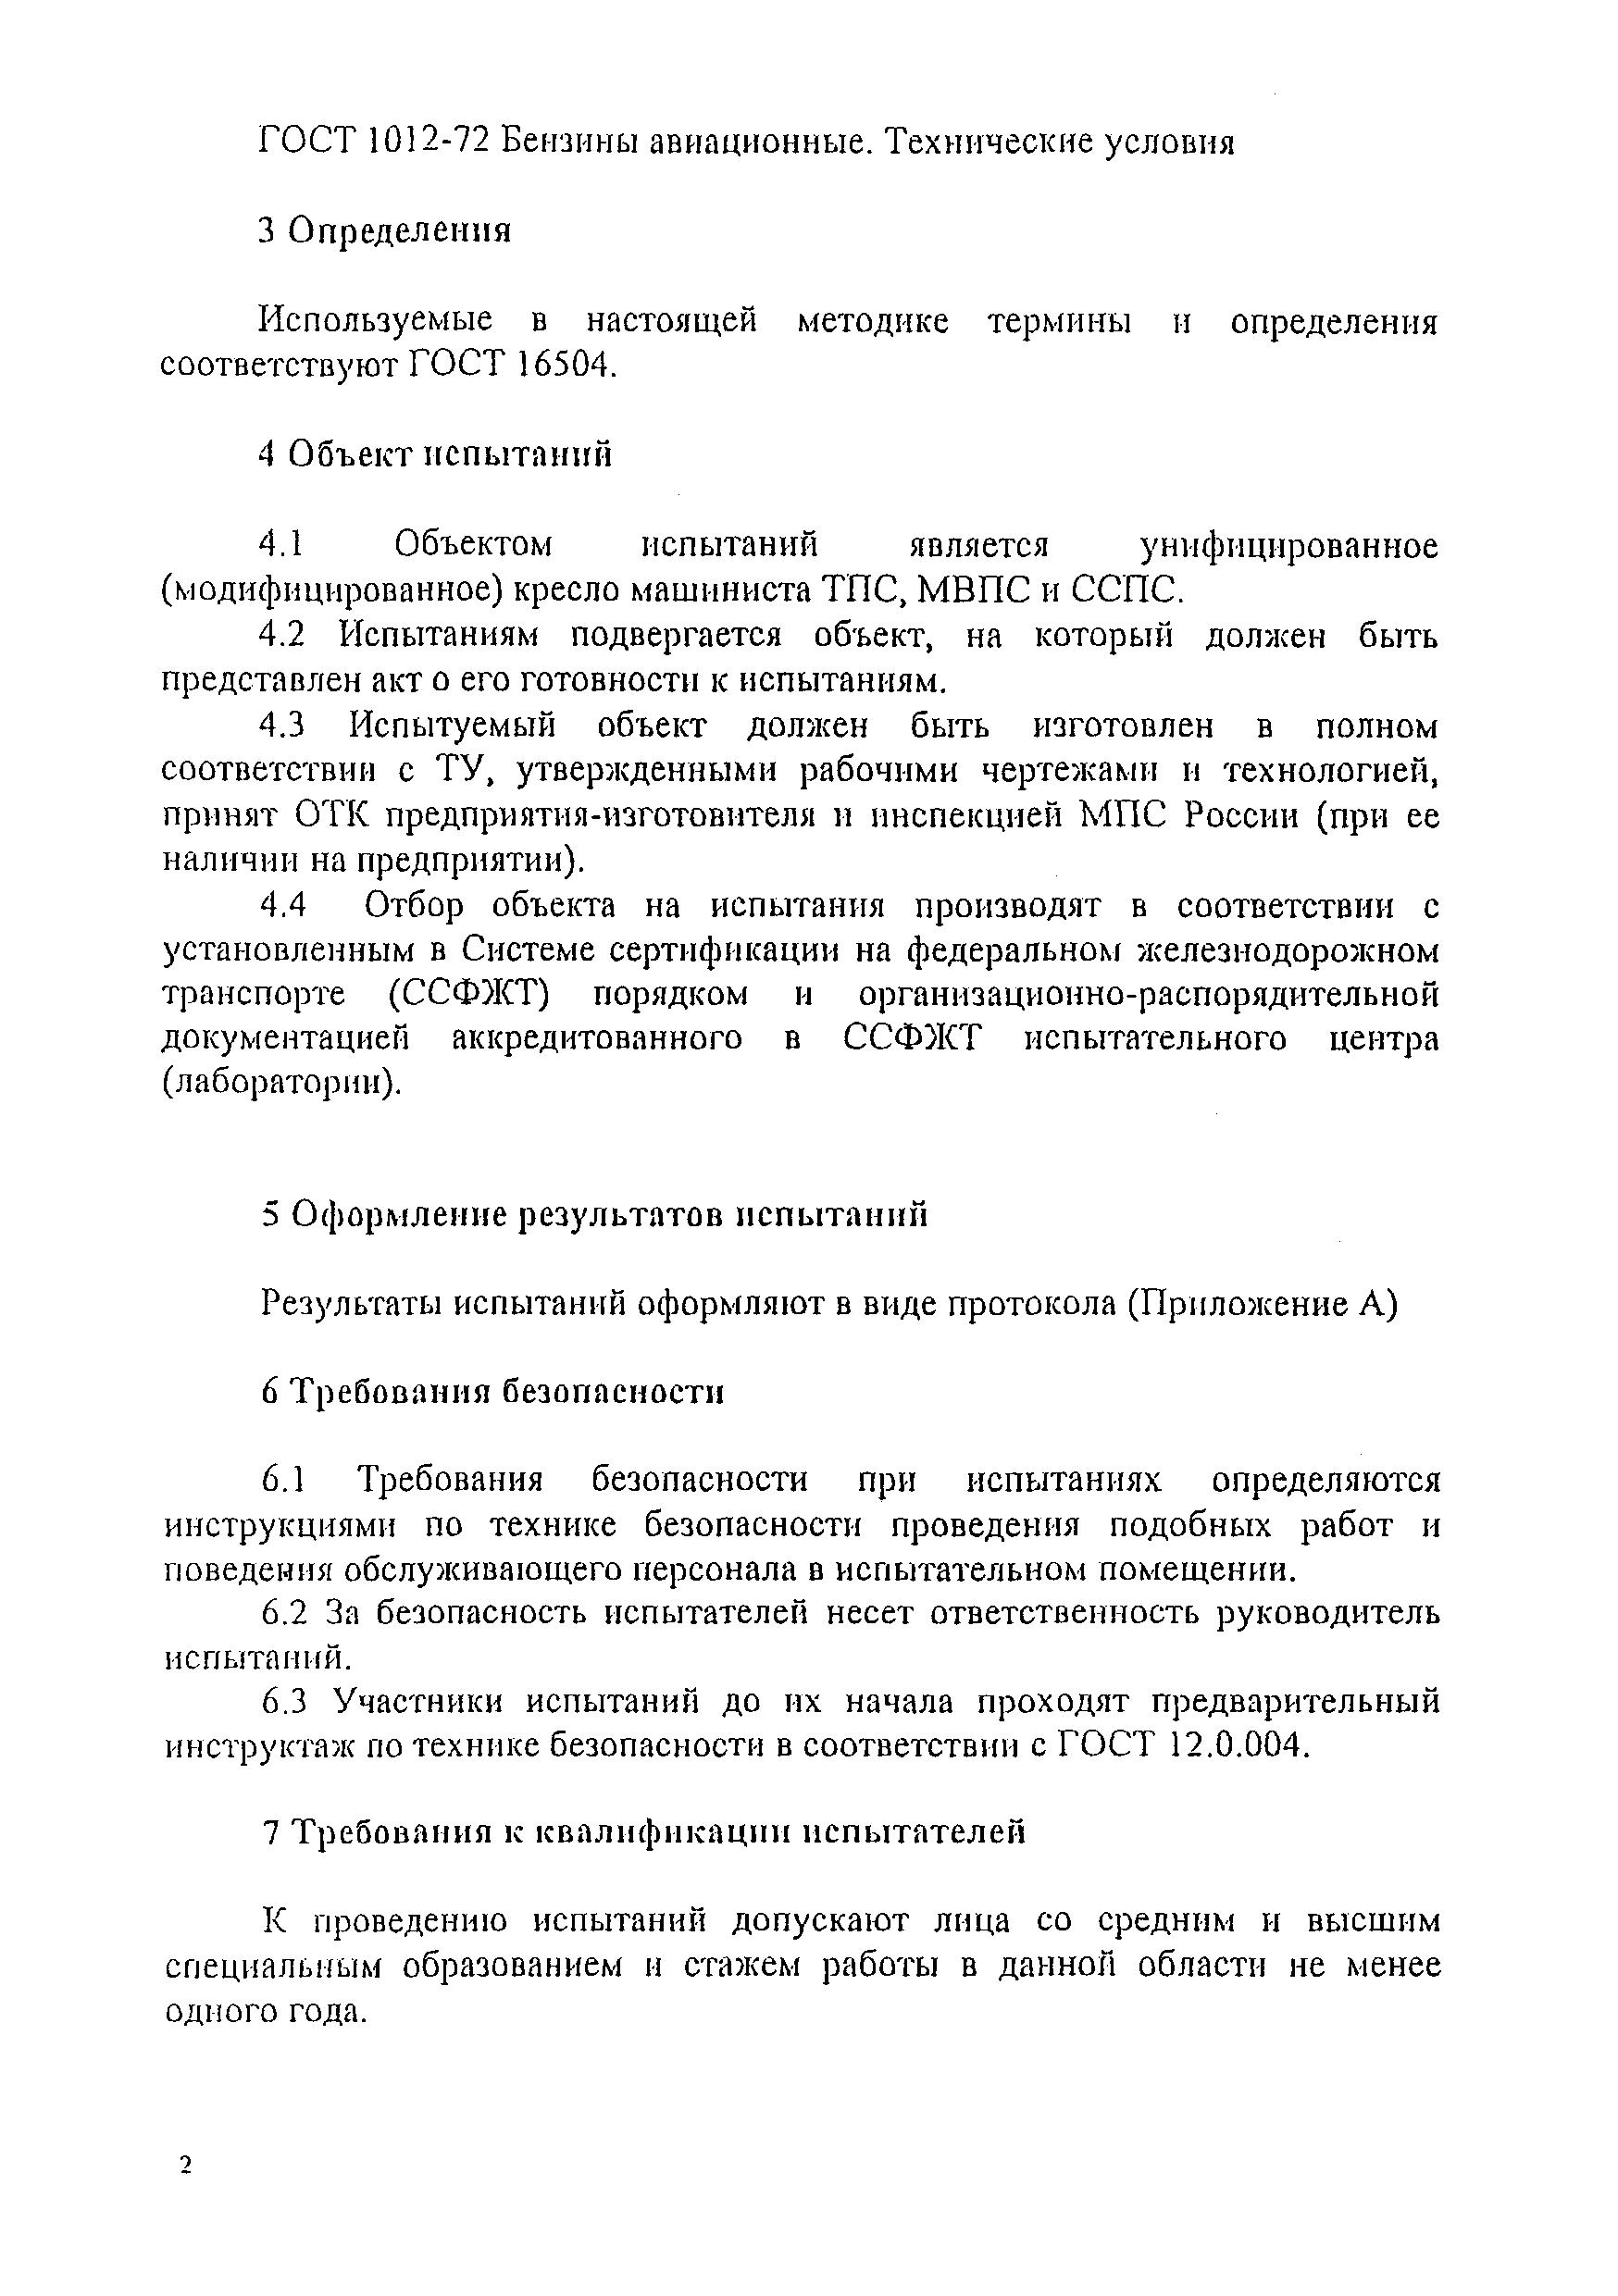 СТ ССФЖТ ЦТ-ЦП 103-2003